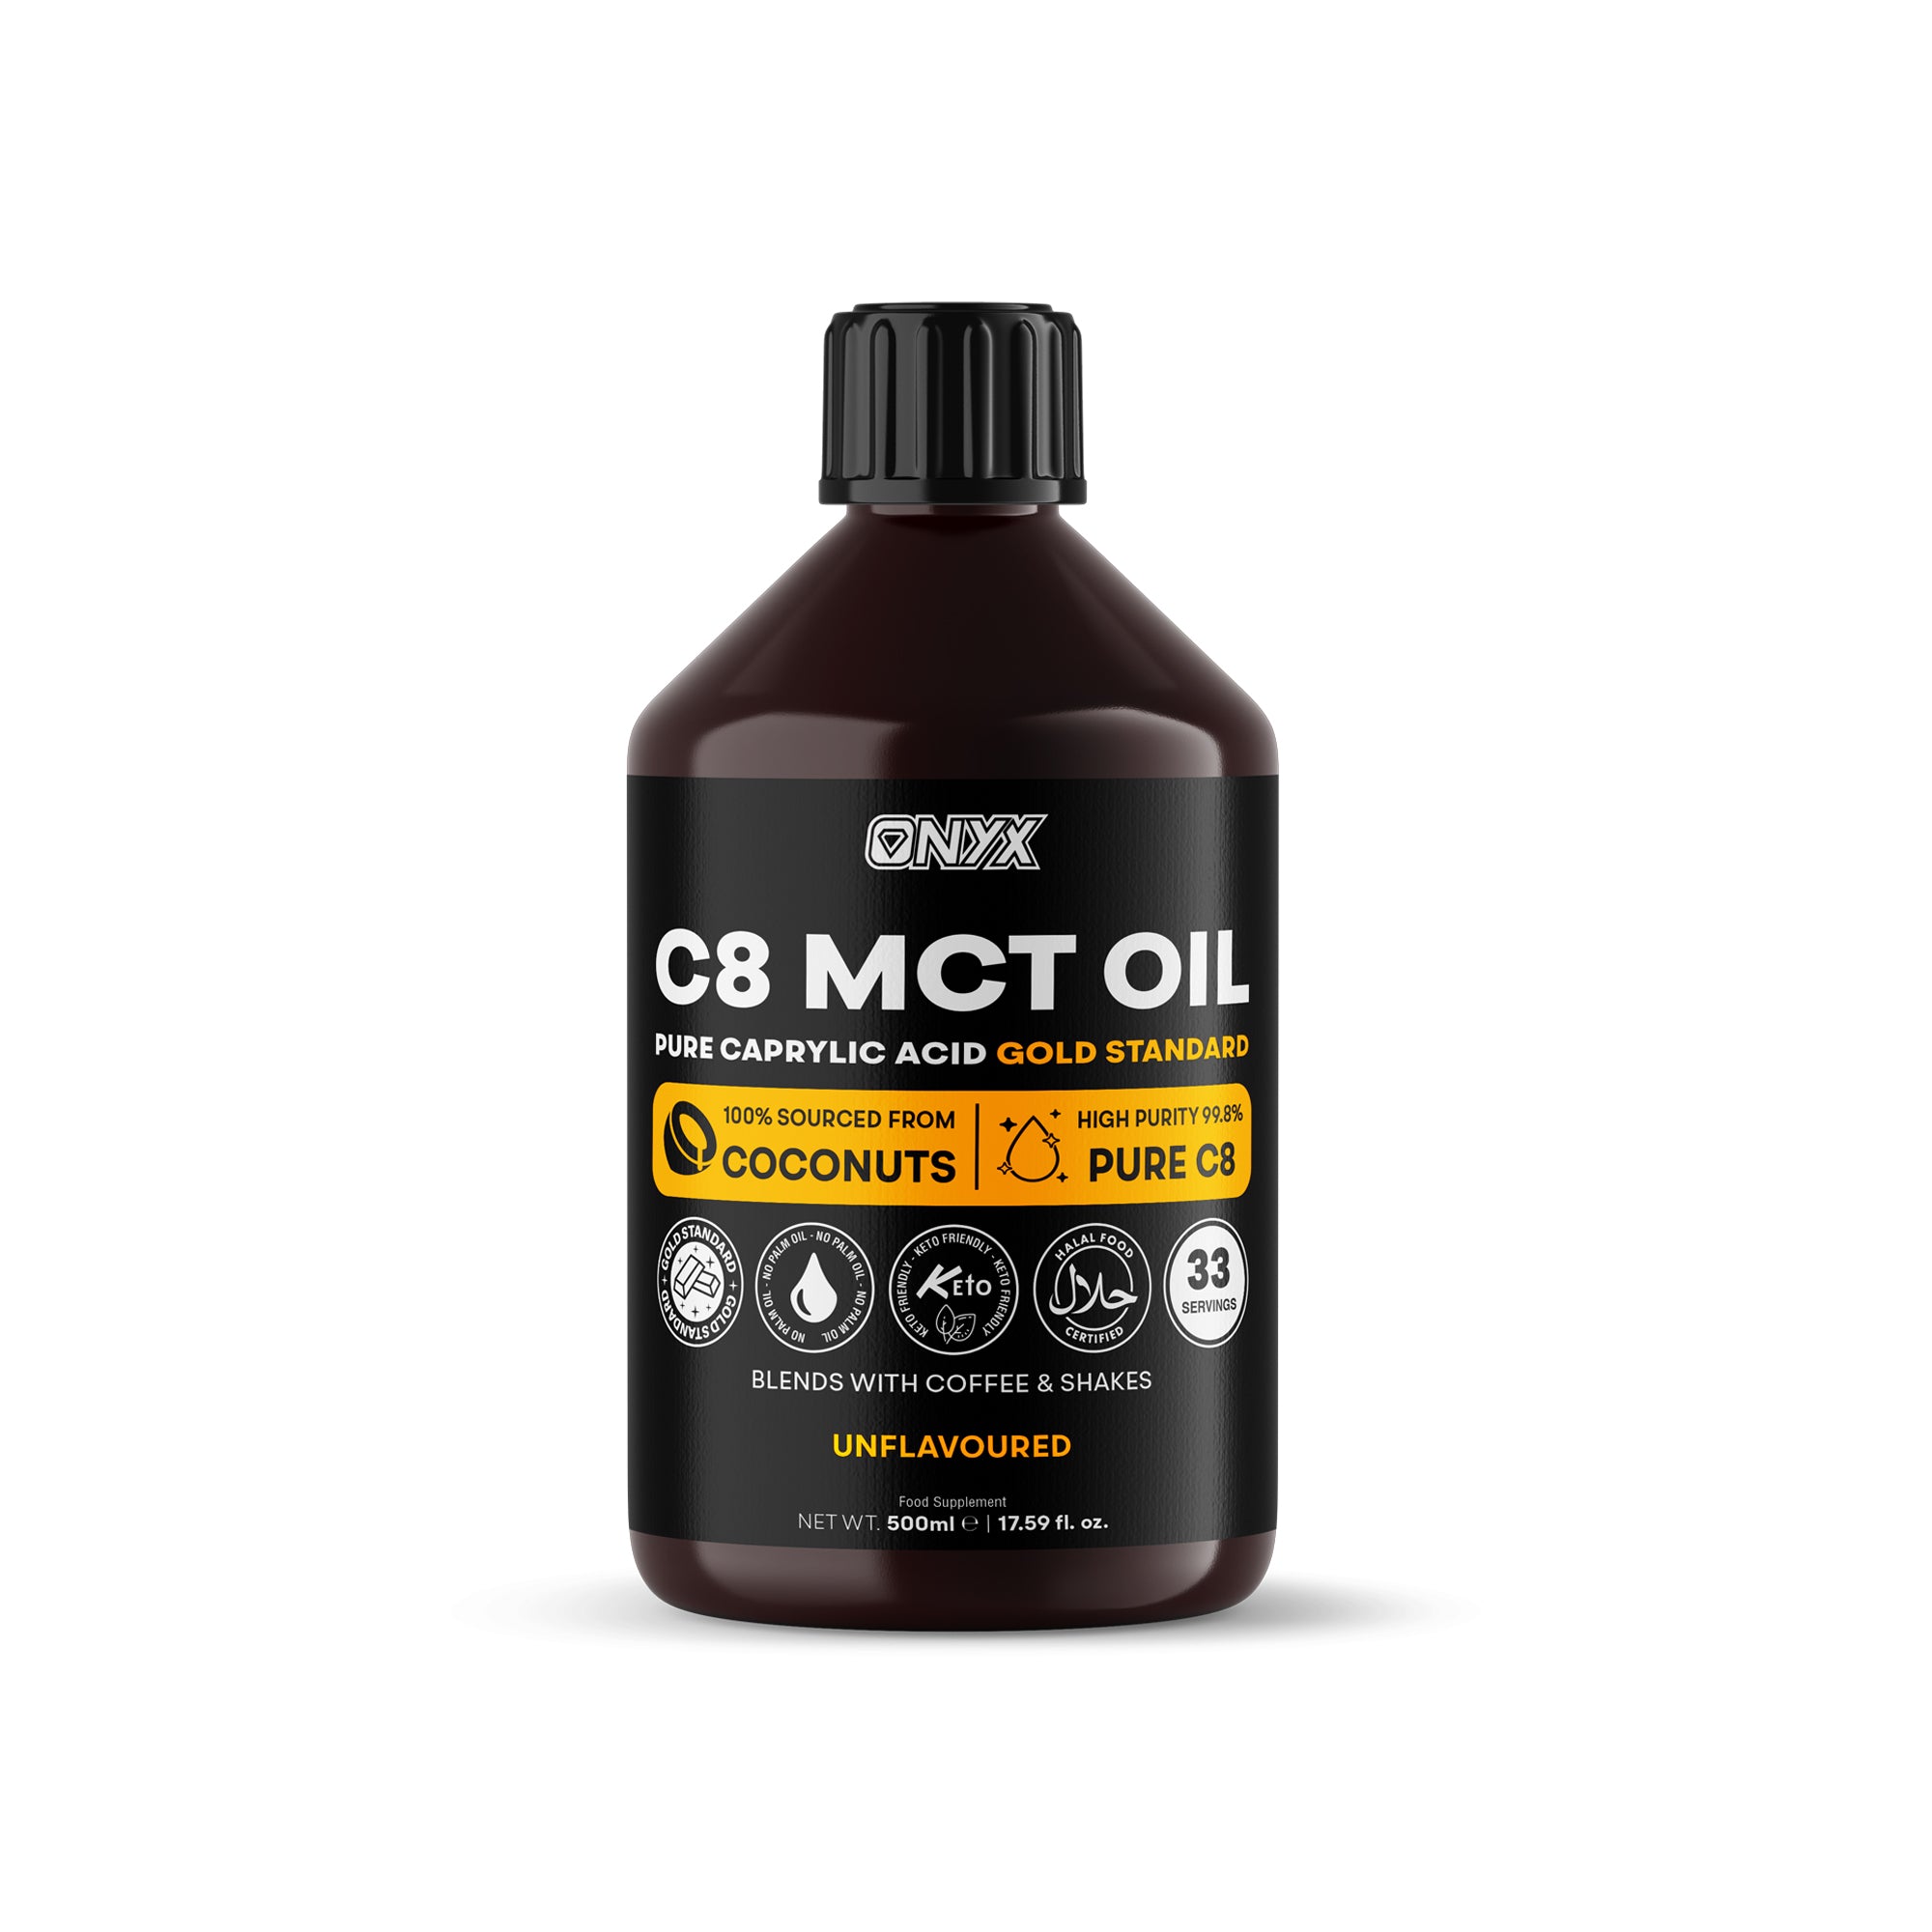 Huile C8 MCT, acide caprylique pur à haute puissance, triglycérides à chaîne moyenne, huile de noix de coco de qualité supérieure